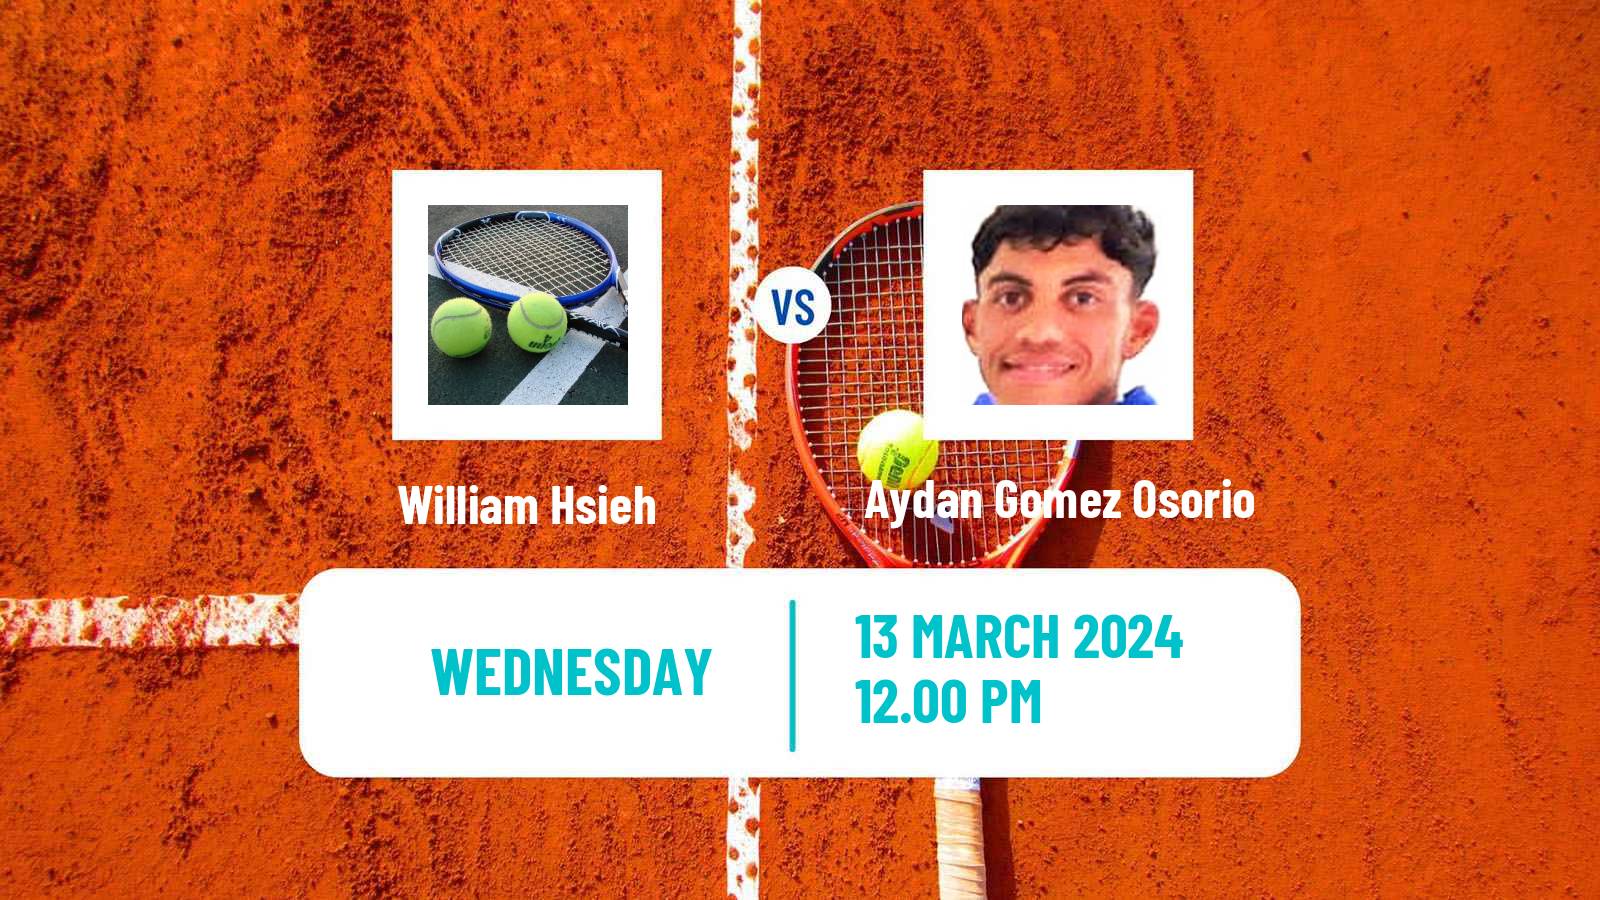 Tennis ITF M25 Santo Domingo 2 Men William Hsieh - Aydan Gomez Osorio